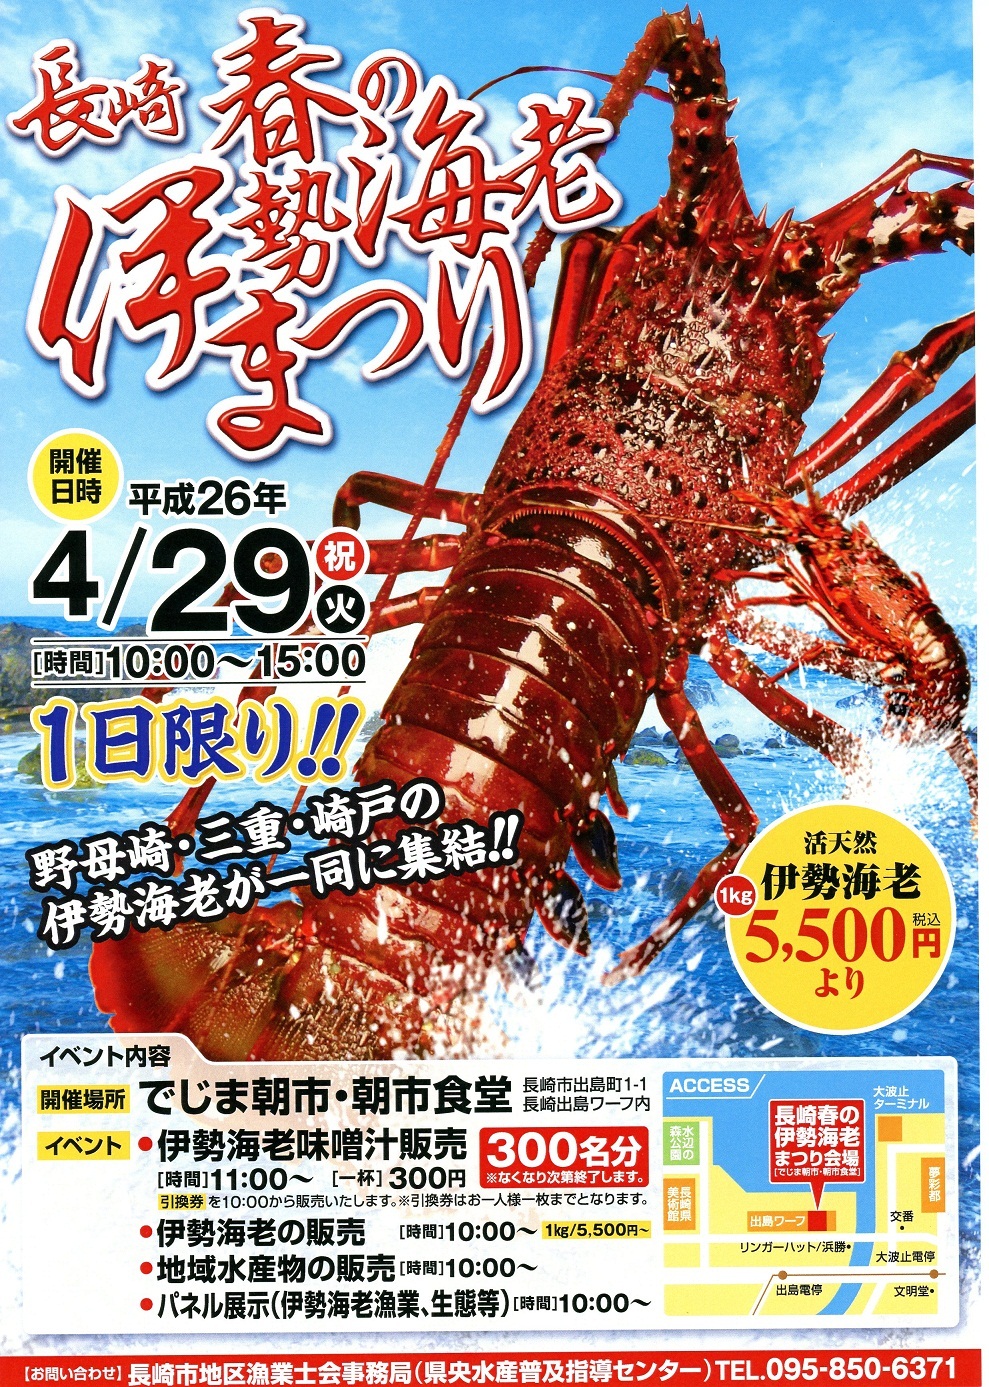 長崎県 ながさきの地産地消 イベント情報 長崎春の伊勢海老まつりが開催されます